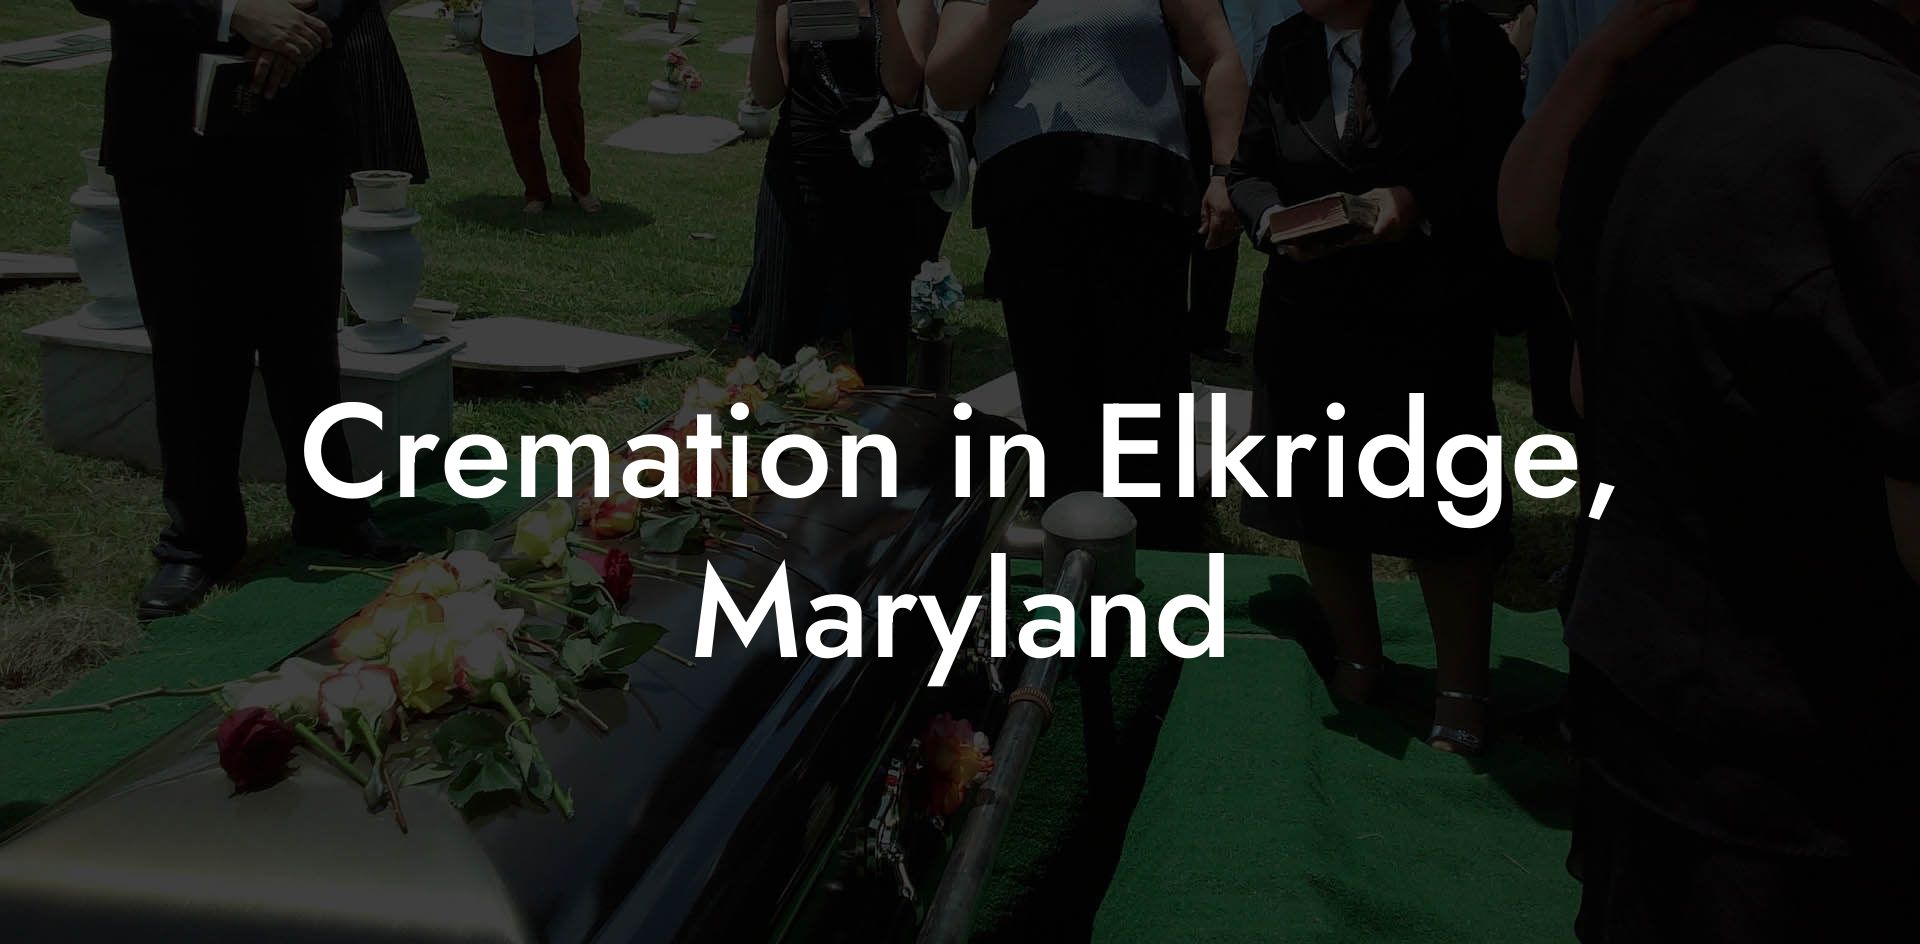 Cremation in Elkridge, Maryland